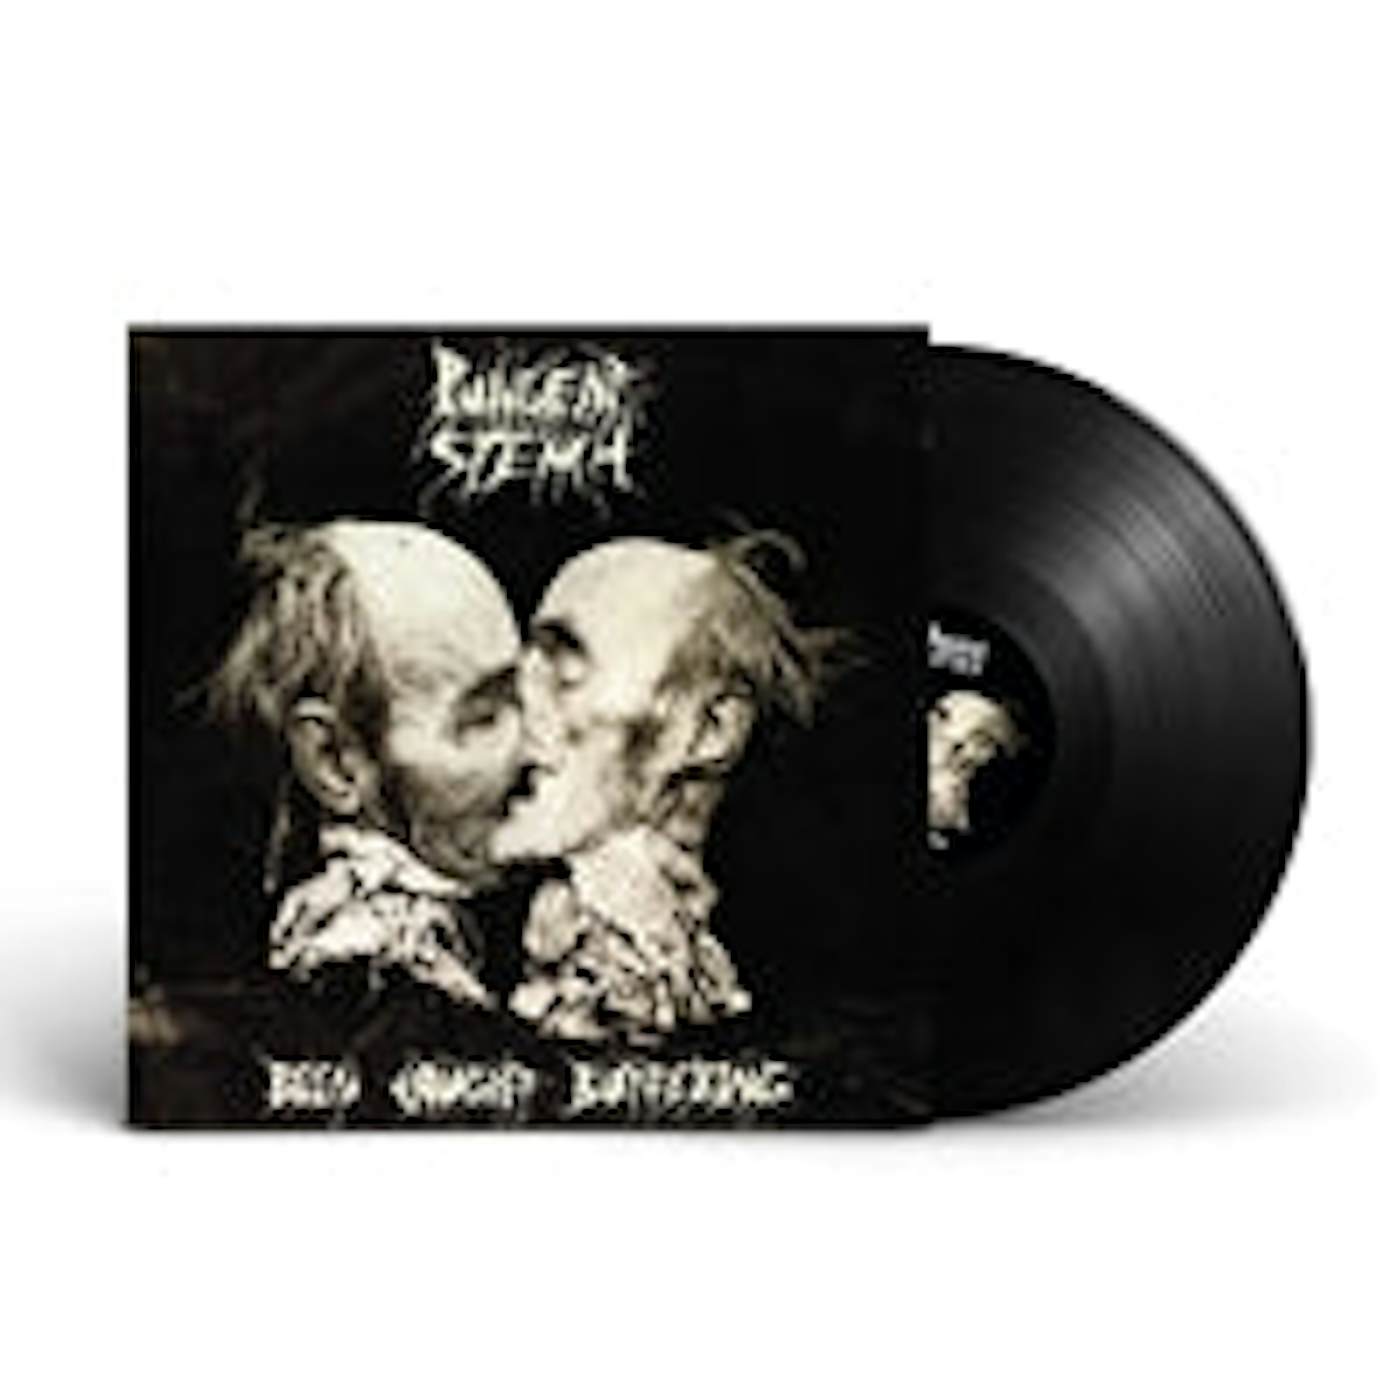 Pungent Stench LP - Been Caught Buttering (Vinyl)